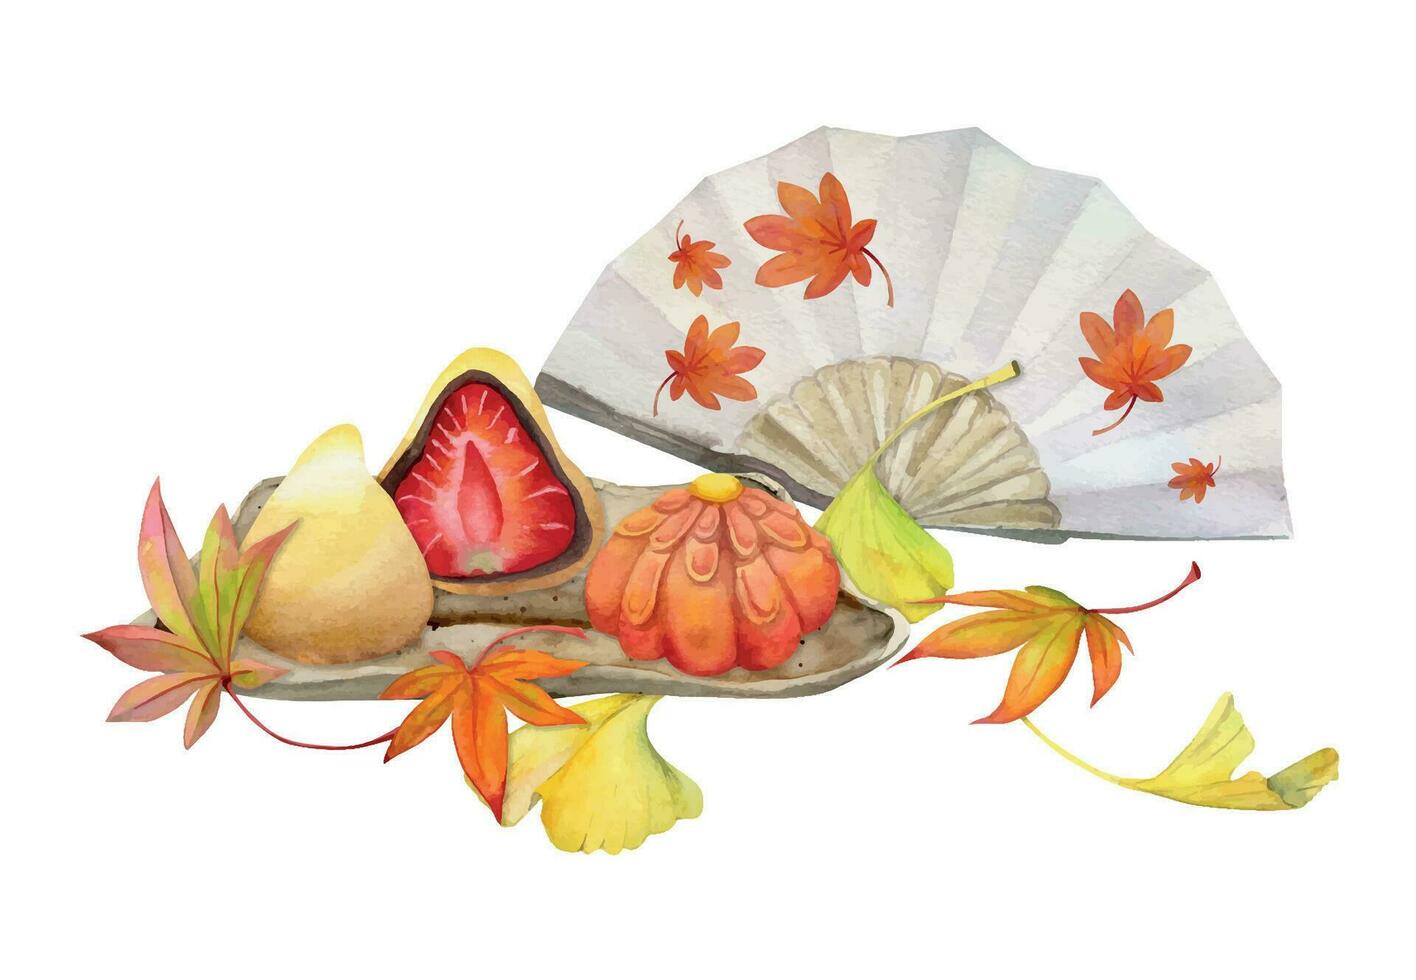 Aquarell Hand gezeichnet traditionell japanisch Süßigkeiten. Keramik Gericht, Herbst Neri-Kiri, mochi, daifuk. isoliert auf Weiß Hintergrund. Design zum Einladungen, Restaurant Speisekarte, Gruß Karten, drucken, Textil- vektor